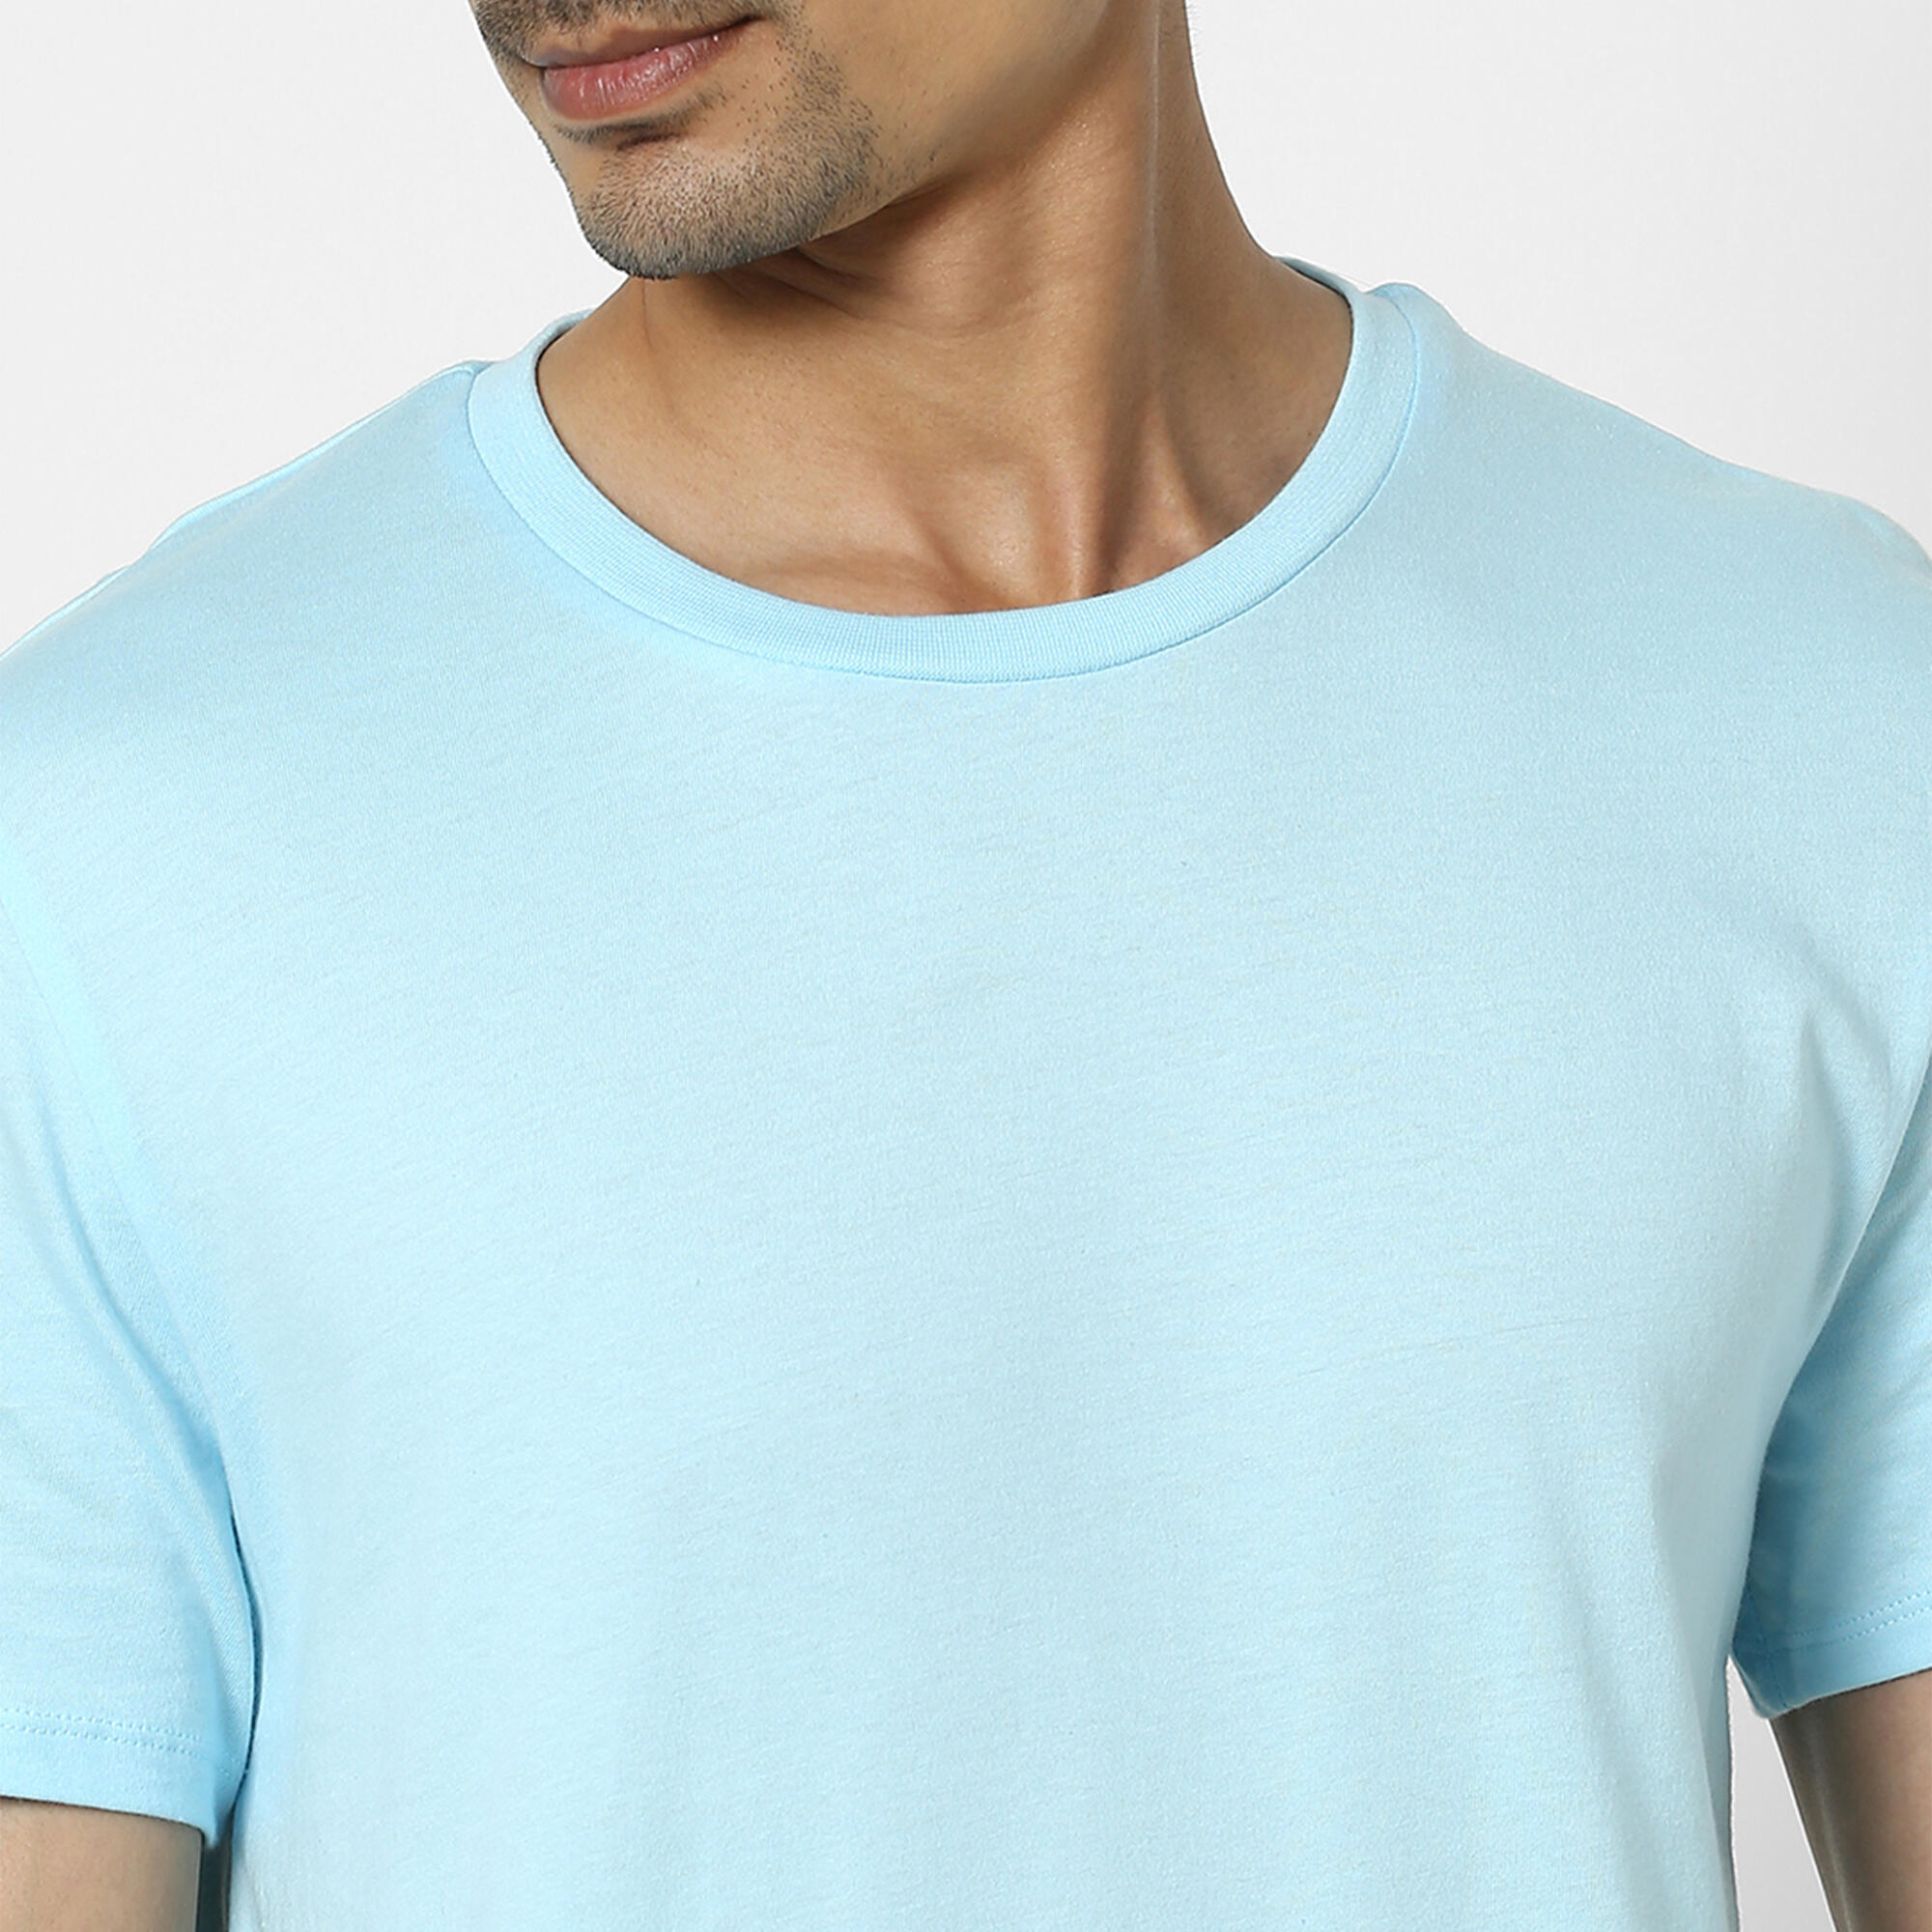 Men's T-Shirt For Gym Cotton Rich 100 - Blue